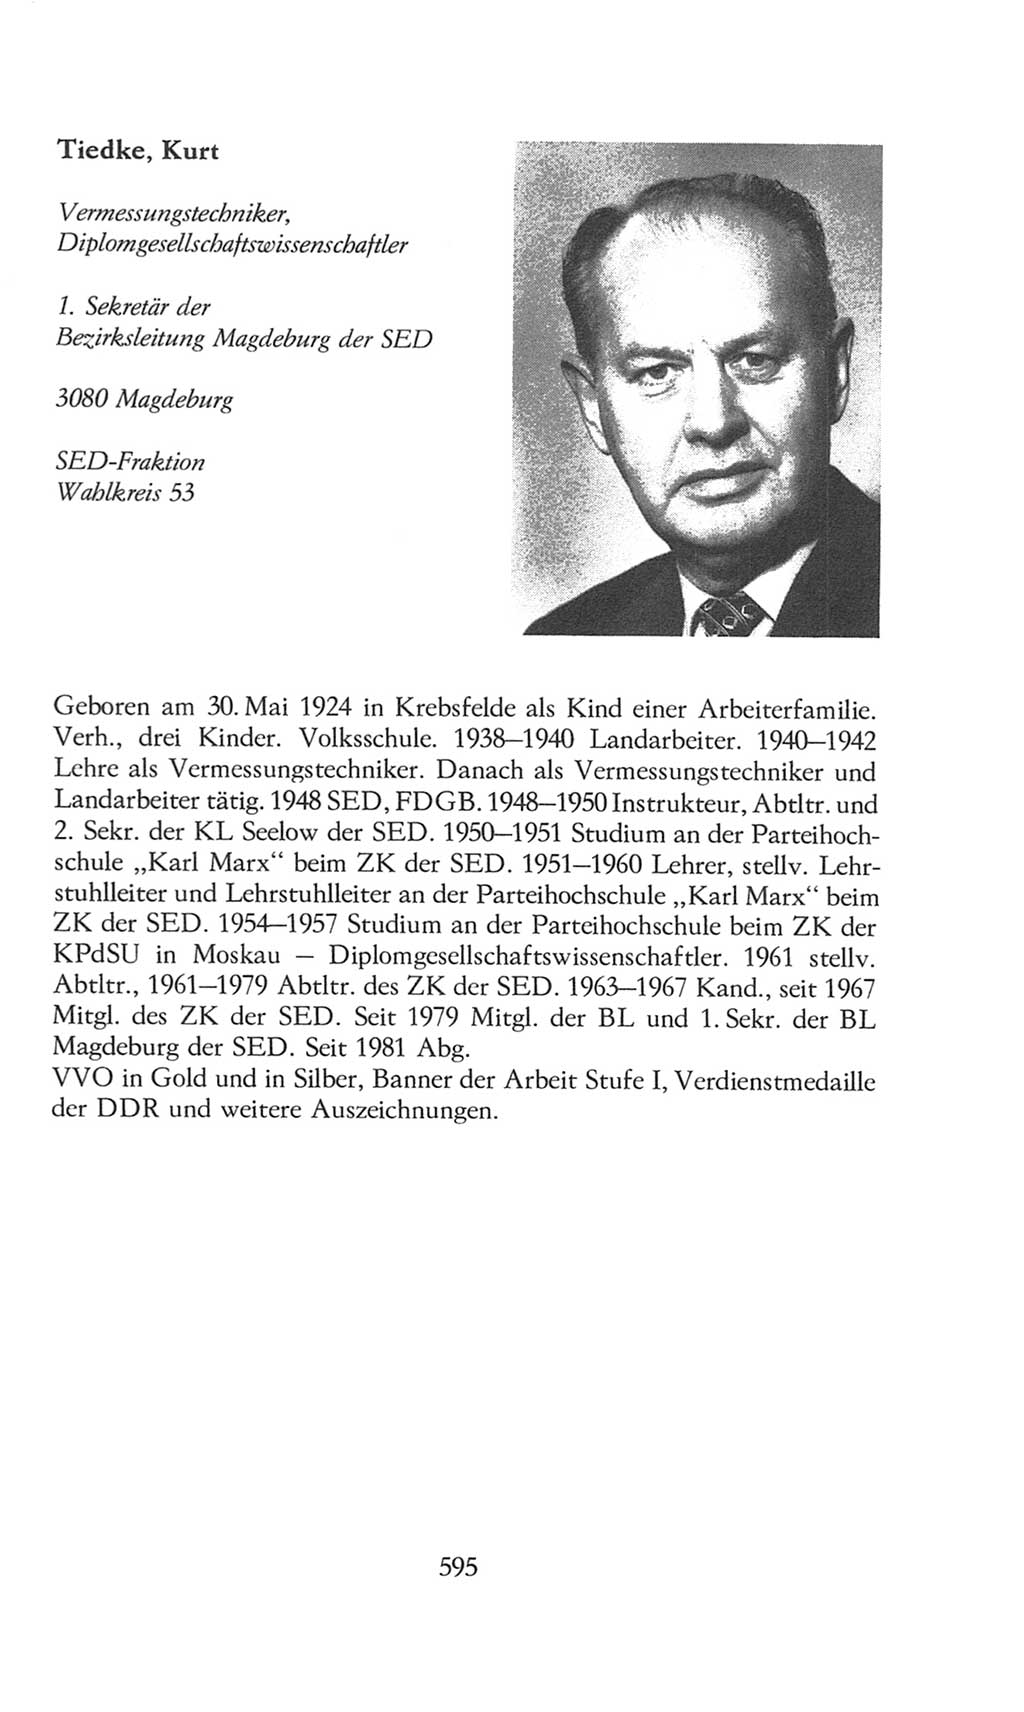 Volkskammer (VK) der Deutschen Demokratischen Republik (DDR), 8. Wahlperiode 1981-1986, Seite 595 (VK. DDR 8. WP. 1981-1986, S. 595)